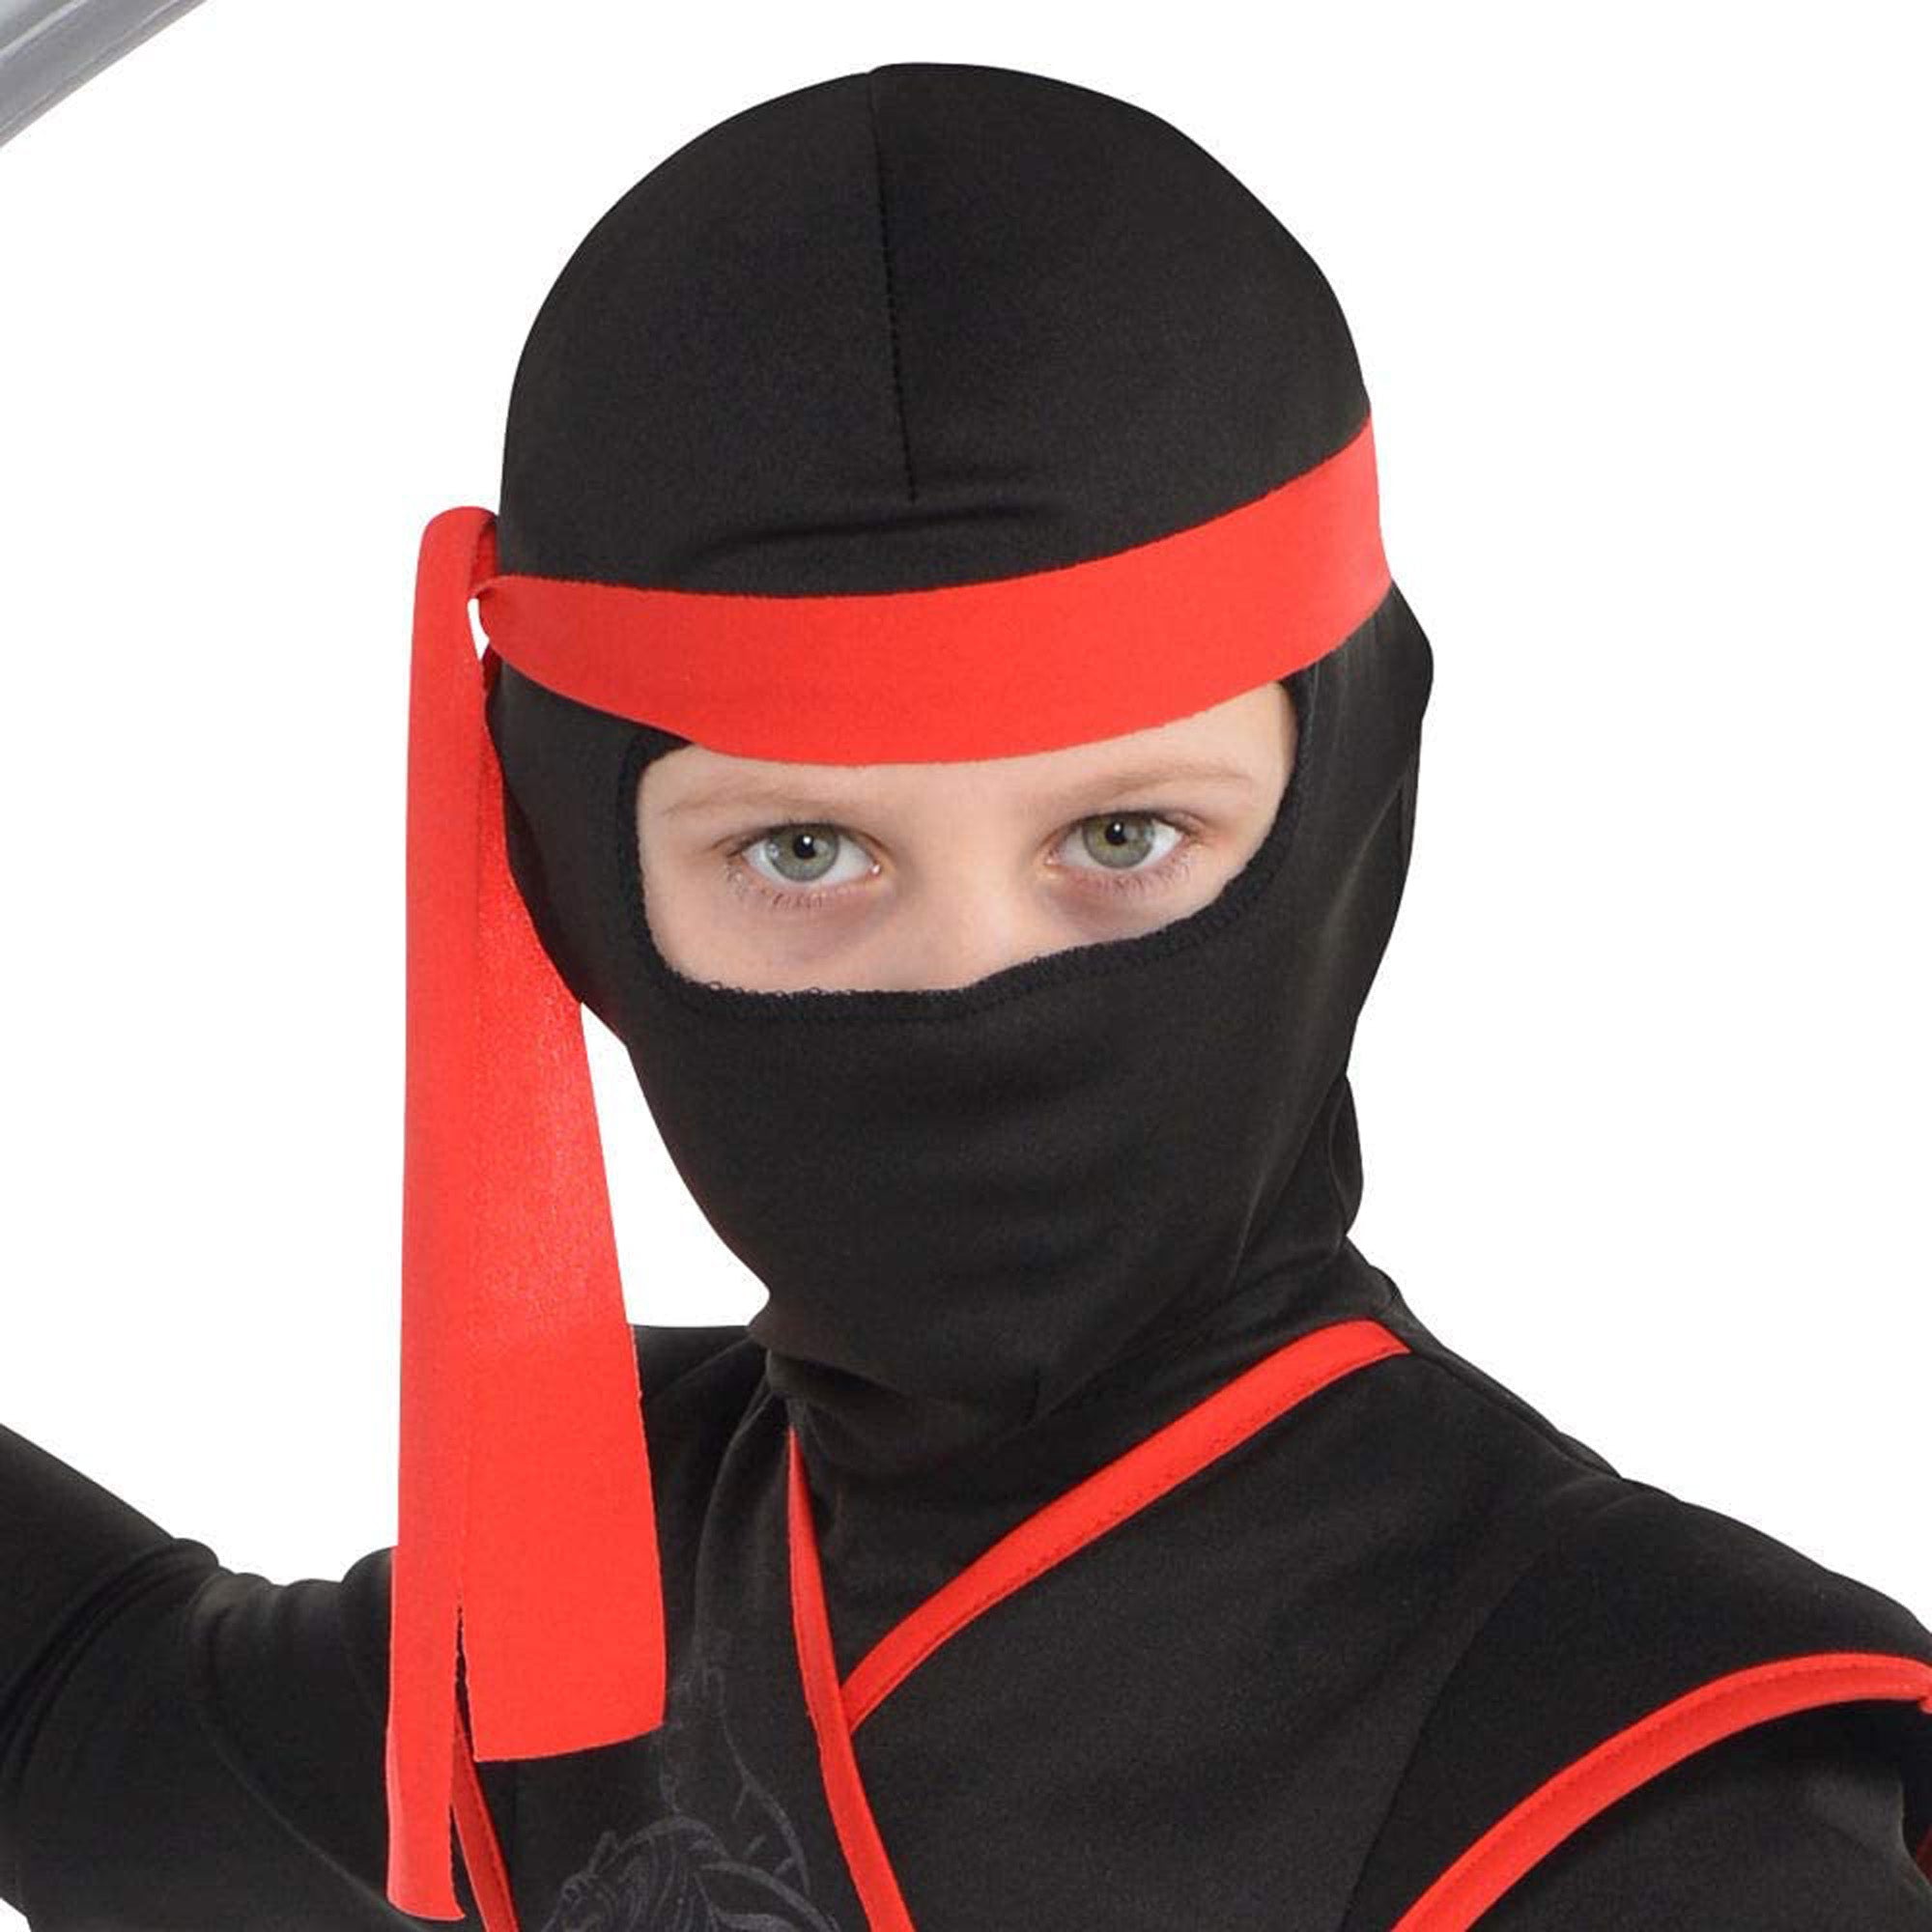 Costume de Ninja de L'ombre pour Garçons - Party Expert